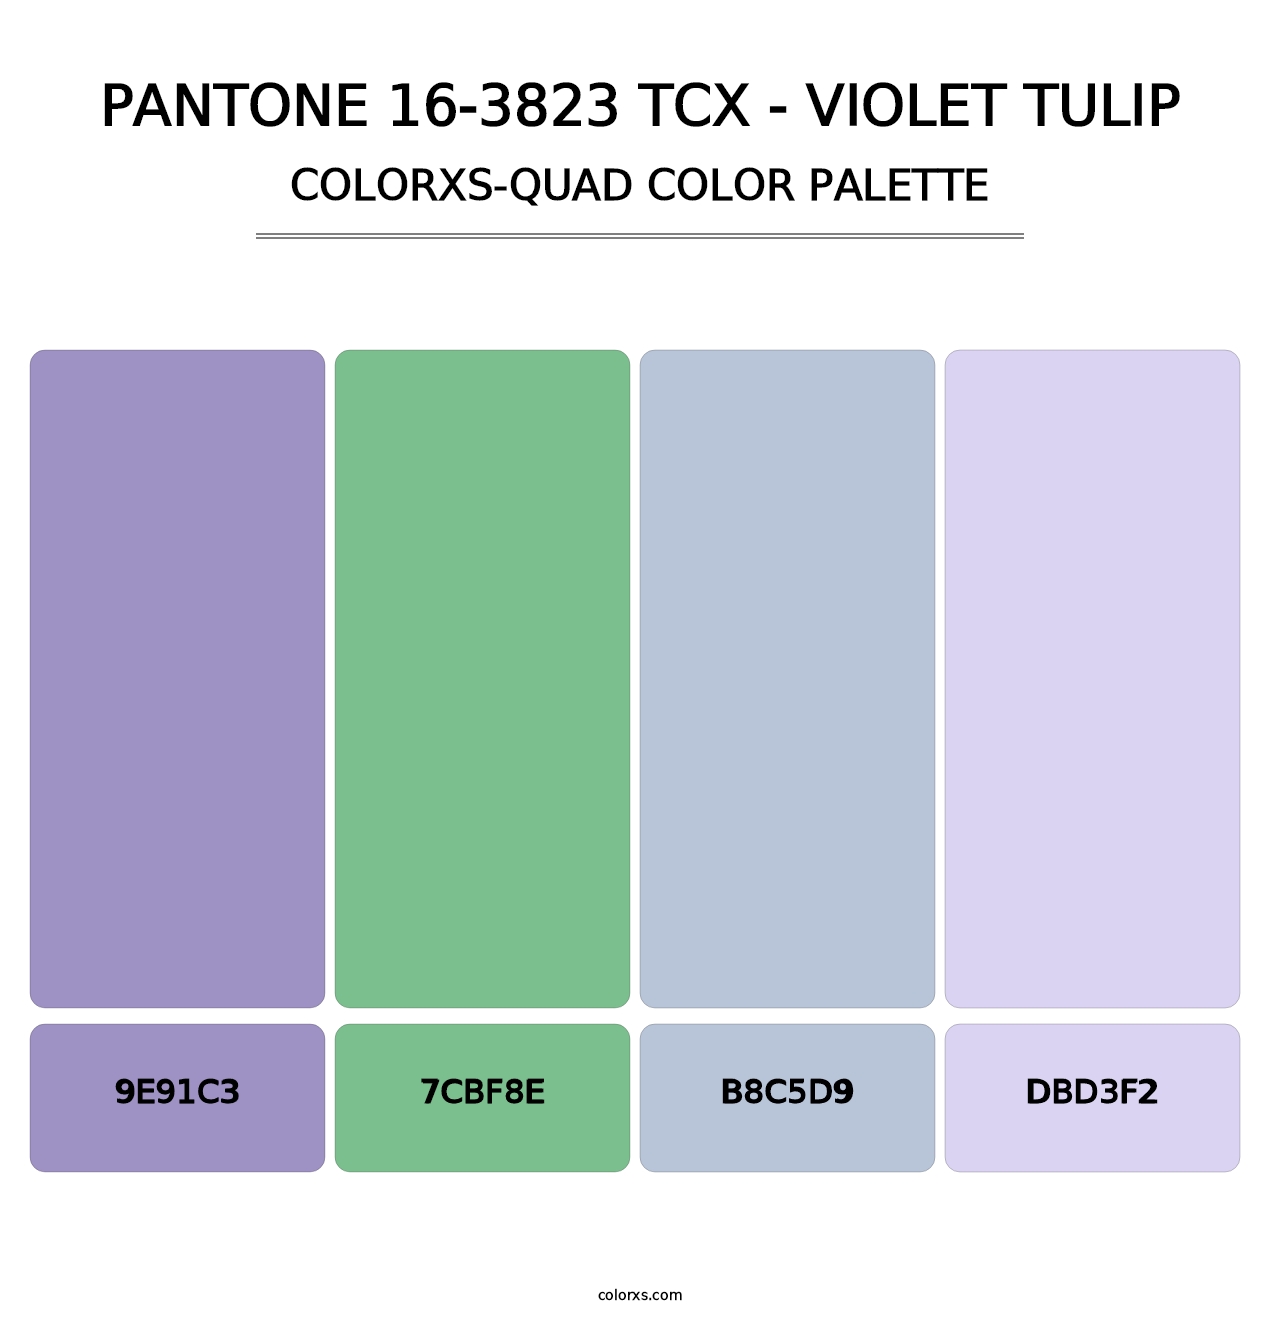 PANTONE 16-3823 TCX - Violet Tulip - Colorxs Quad Palette